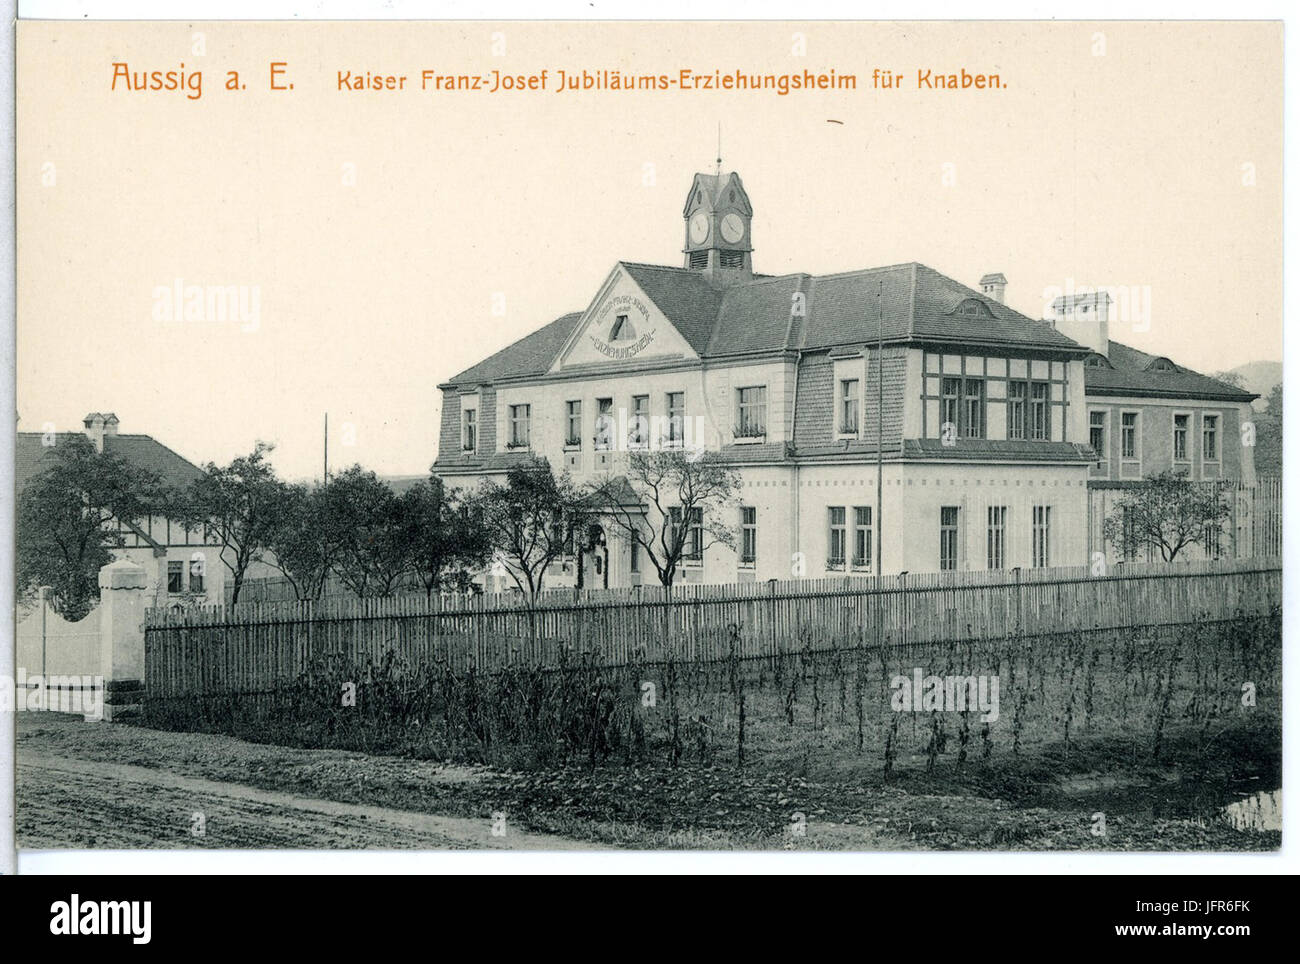 15420-Aussig-1913-Kaiser Franz Josef - Erziehungsheim für Knaben-Brück & Sohn Kunstverlag Stock Photo